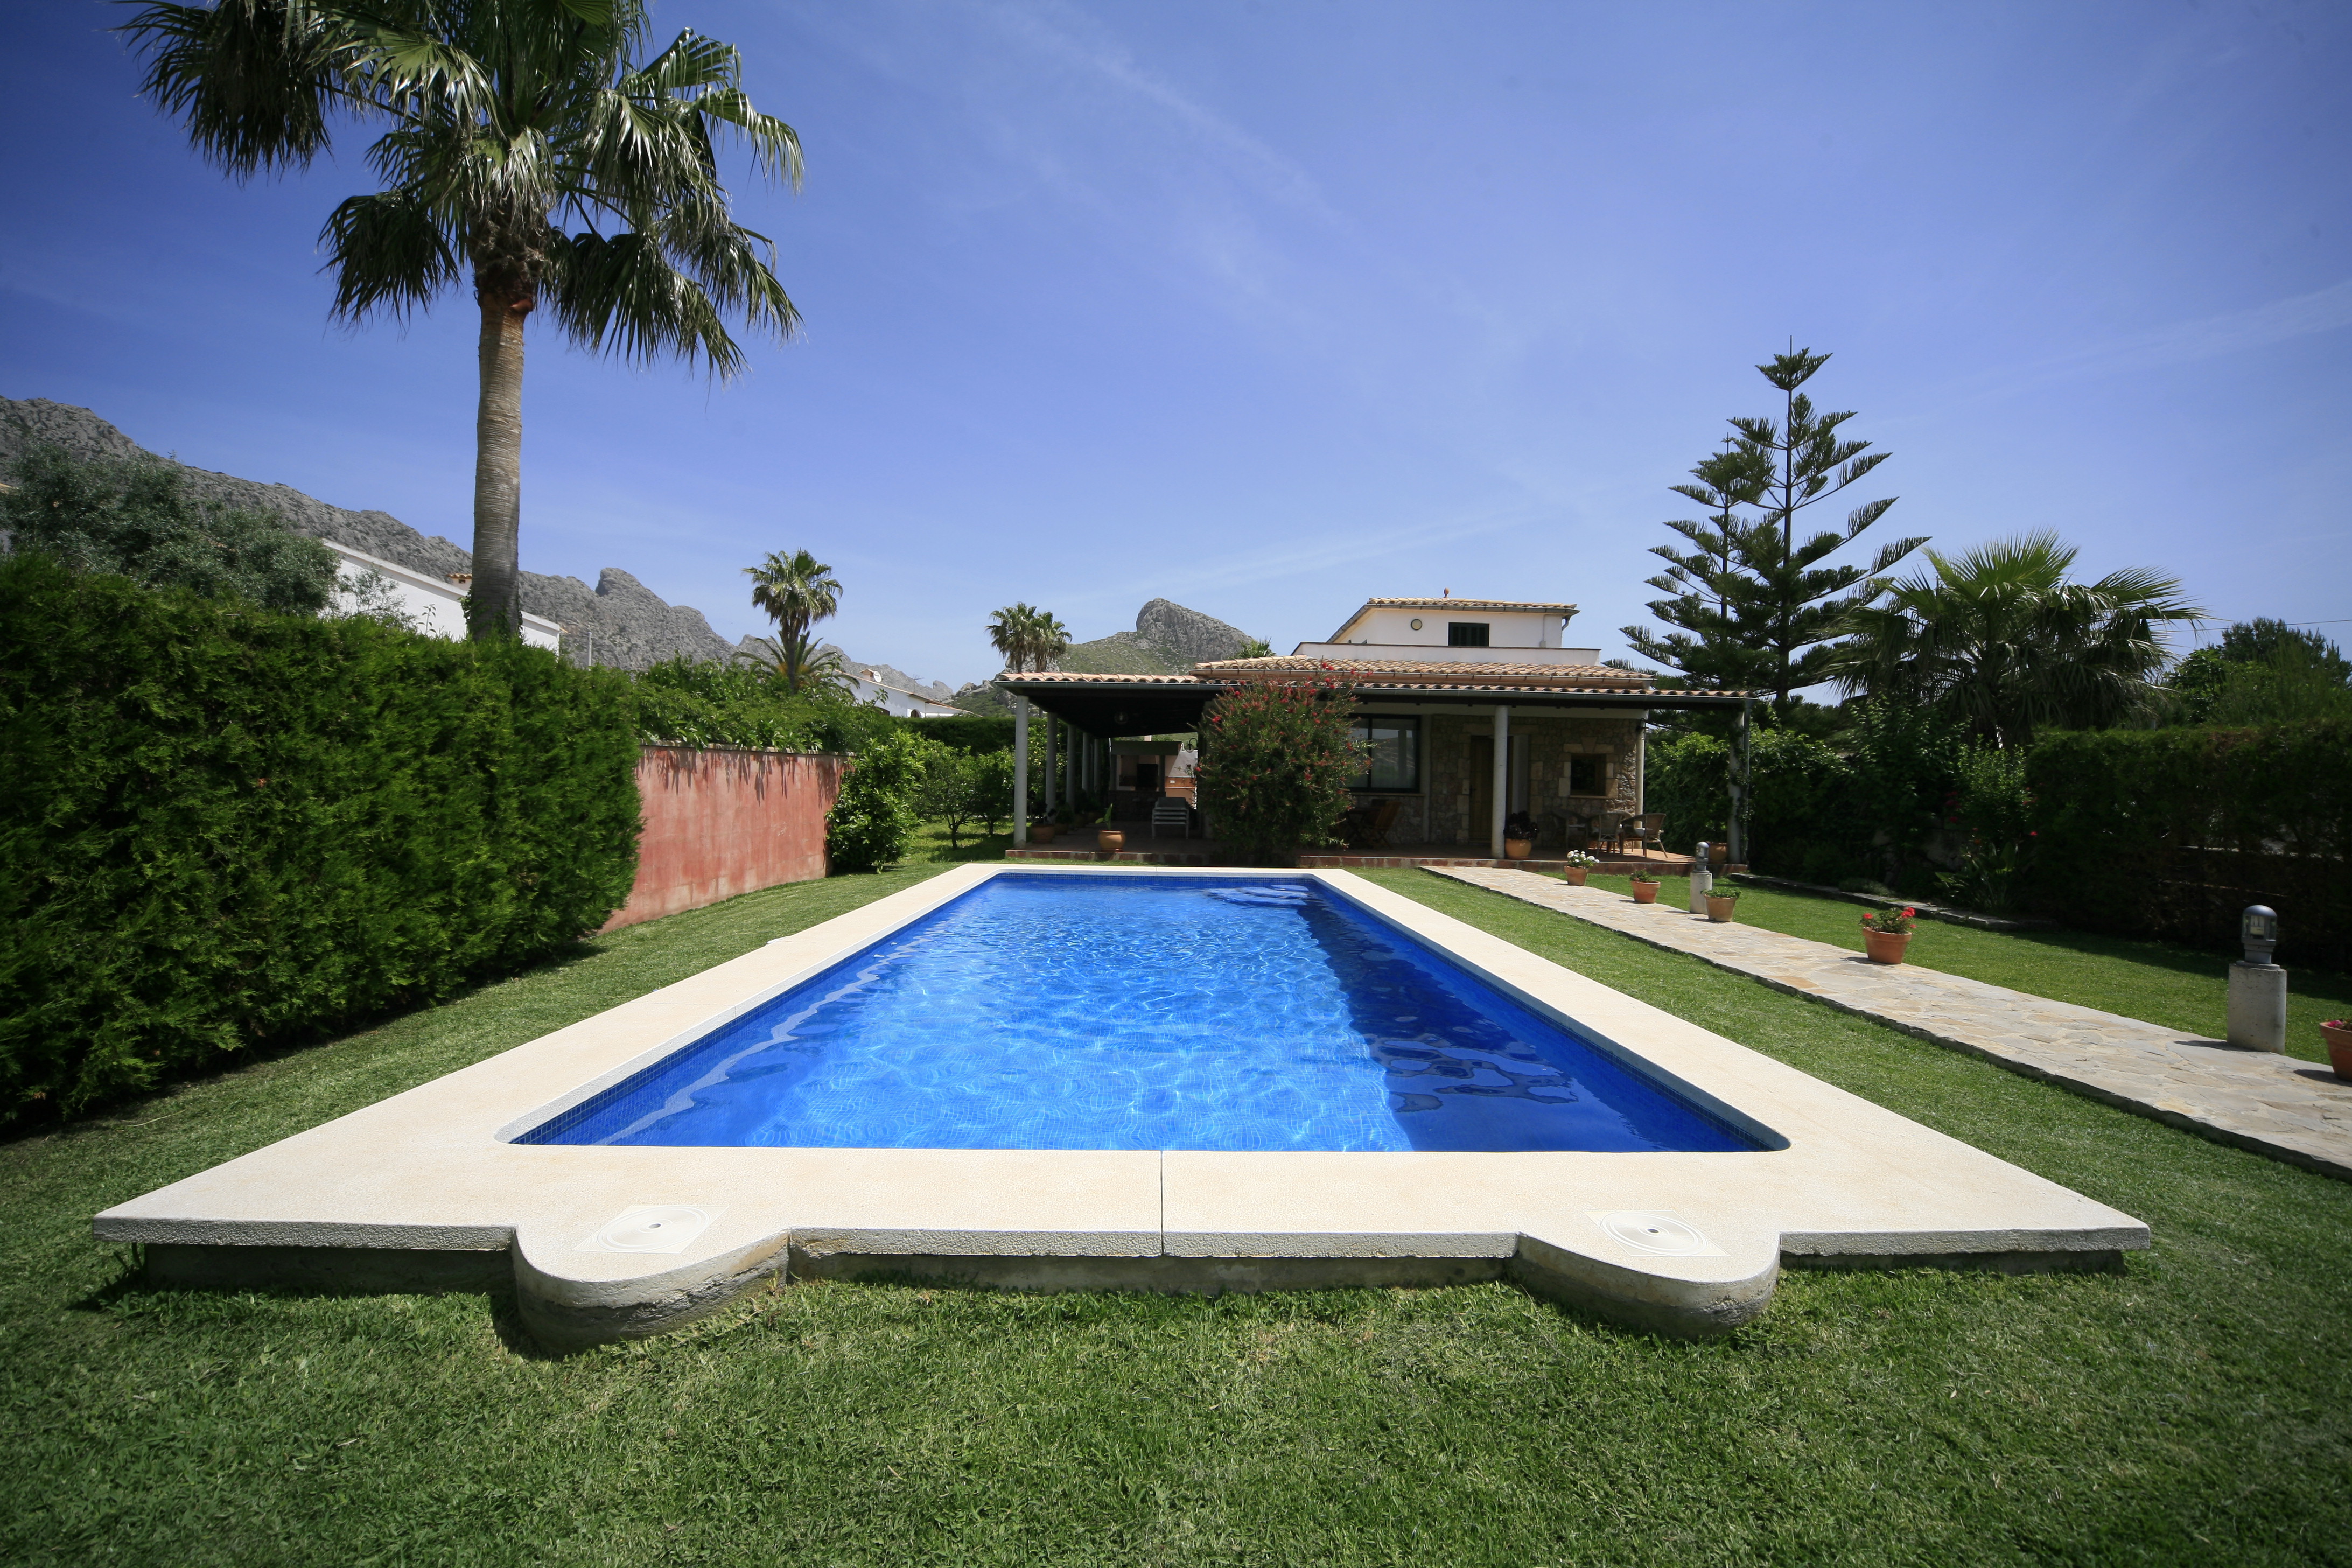 Two bedroom holiday villa close to beach Puerto Pollensa Mallorca